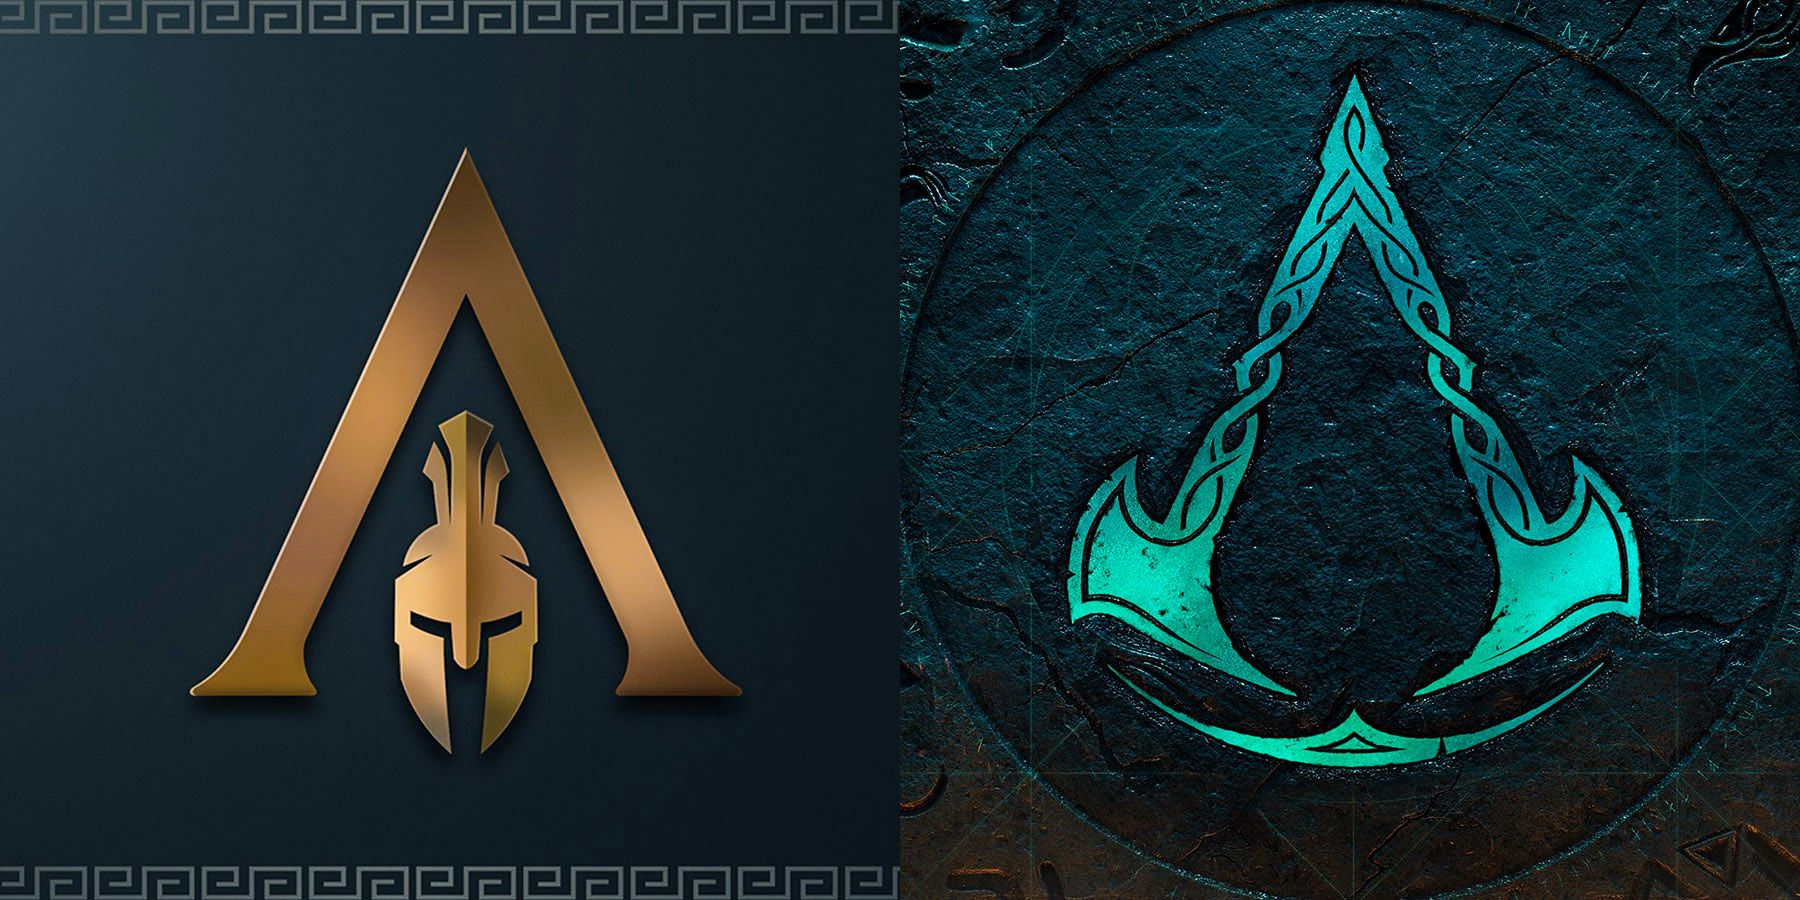 Assassin’s Creed Odyssey og Valhallas symboler har mistet mye mening